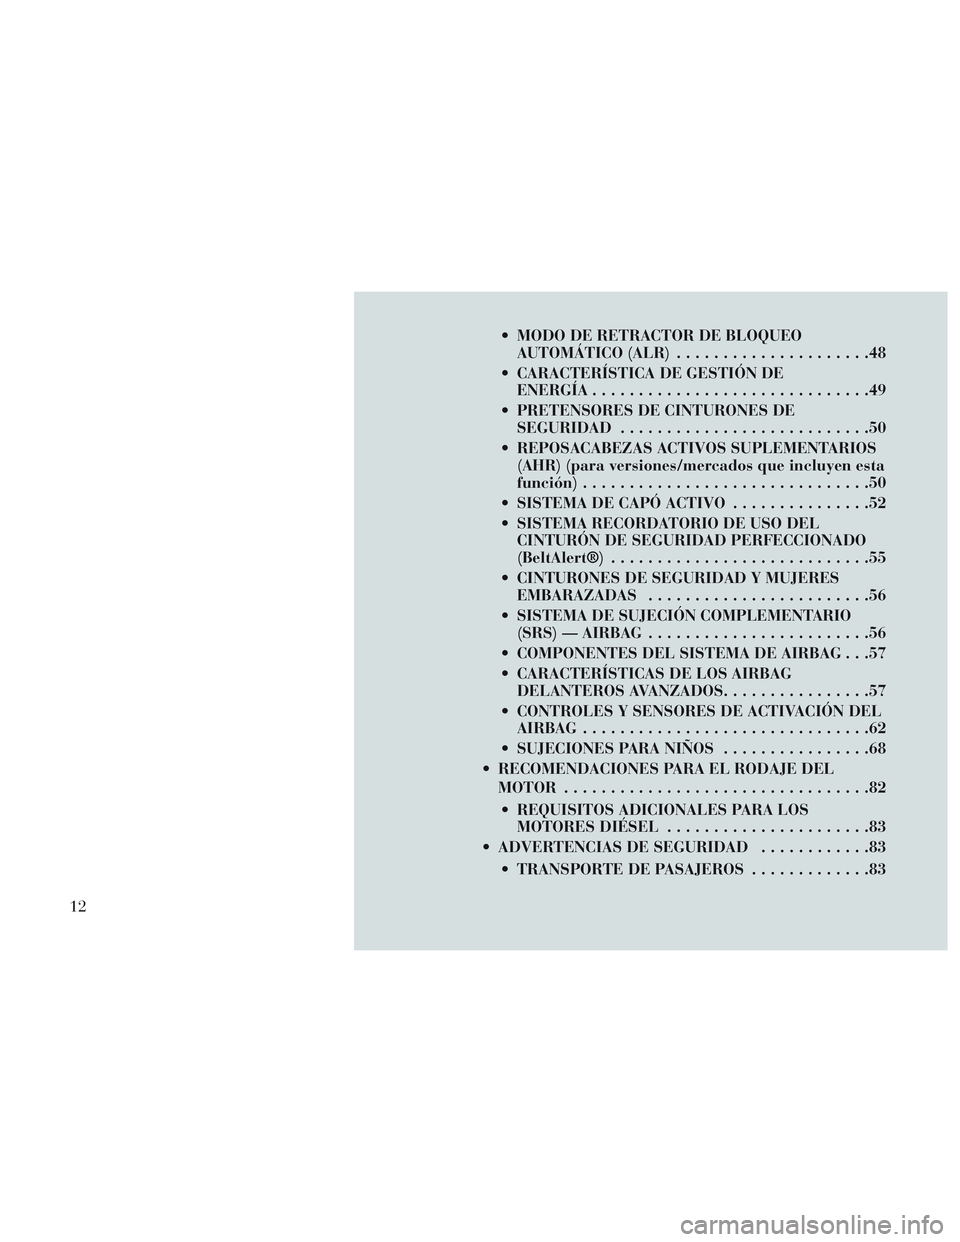 Lancia Voyager 2014  Manual de Empleo y Cuidado (in Spanish)  MODO DE RETRACTOR DE BLOQUEOAUTOMÁTICO (ALR) .....................48
 CARACTERÍSTICA DE GESTIÓN DE ENERGÍA ..............................49
 PRETENSORES DE CINTURONES DE SEGURIDAD ...............